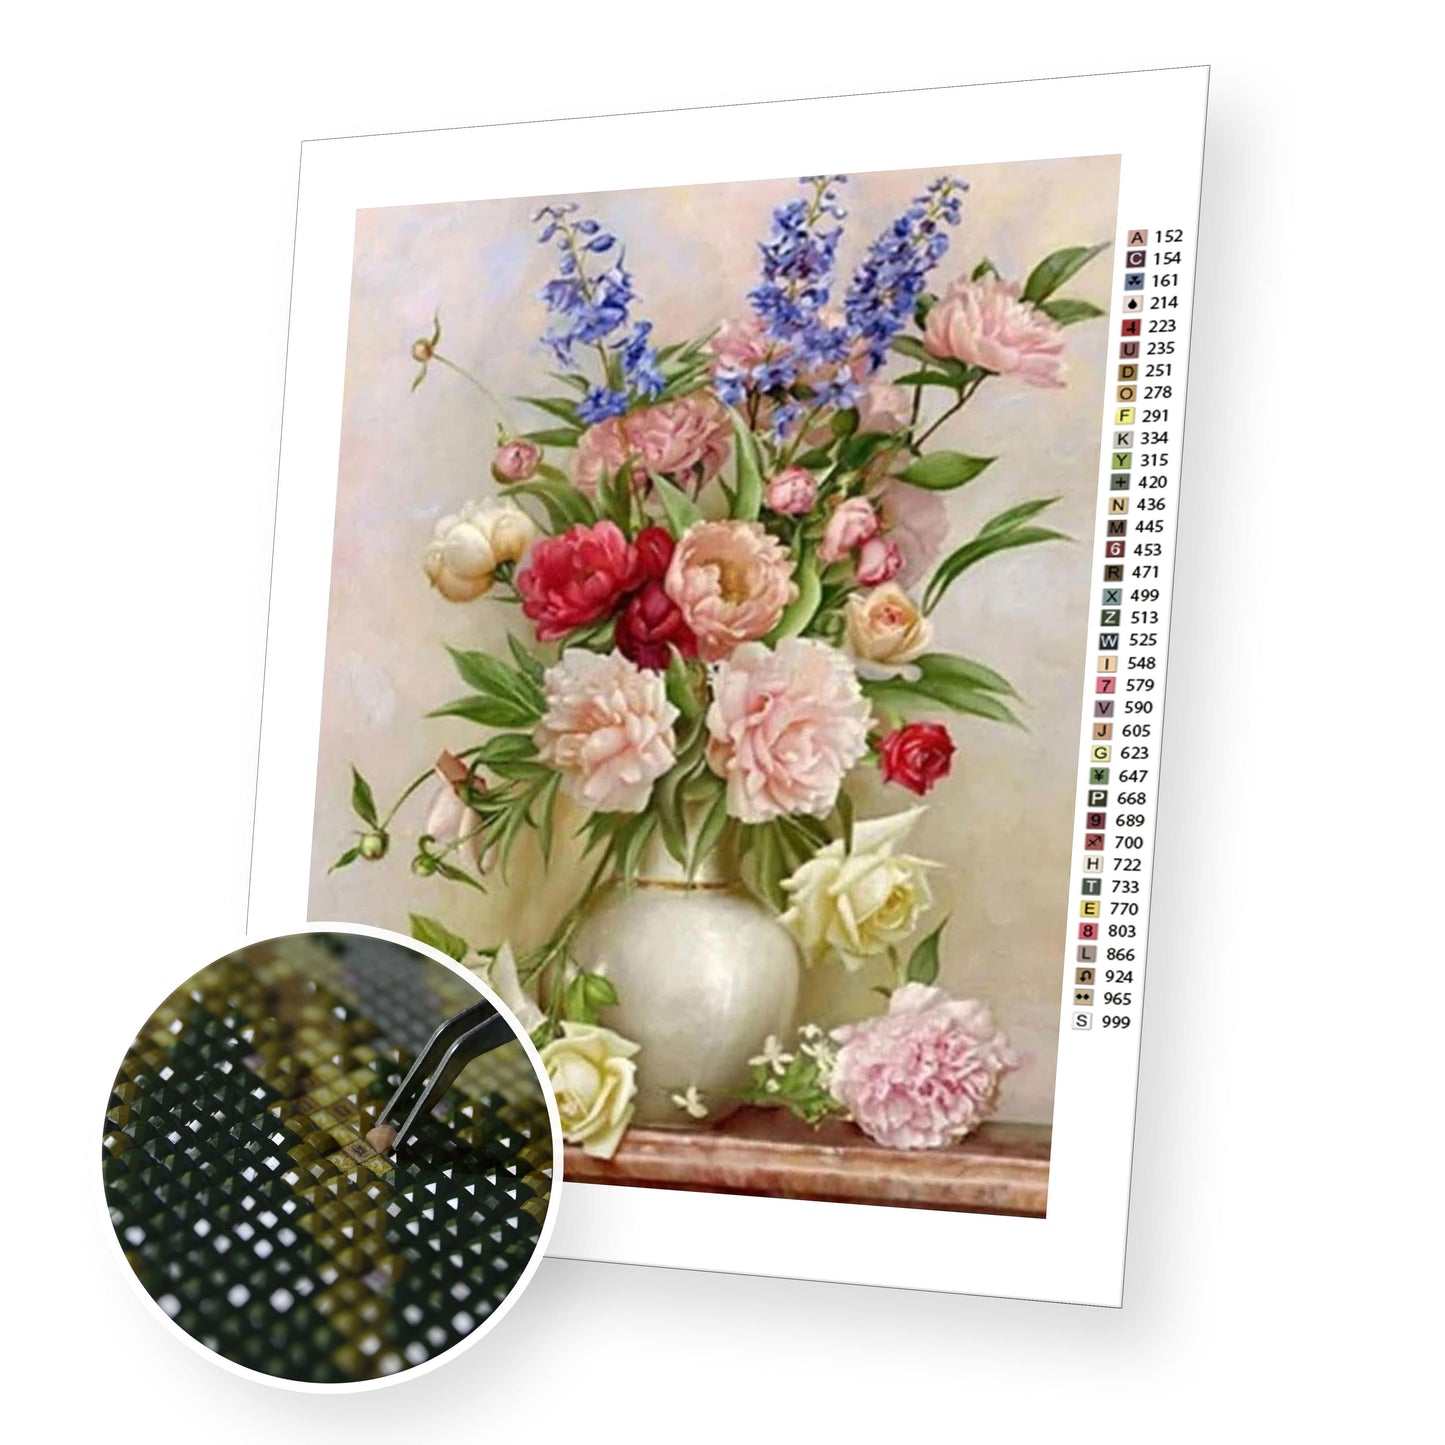 Roses and Peonies - Diamond Painting Kit